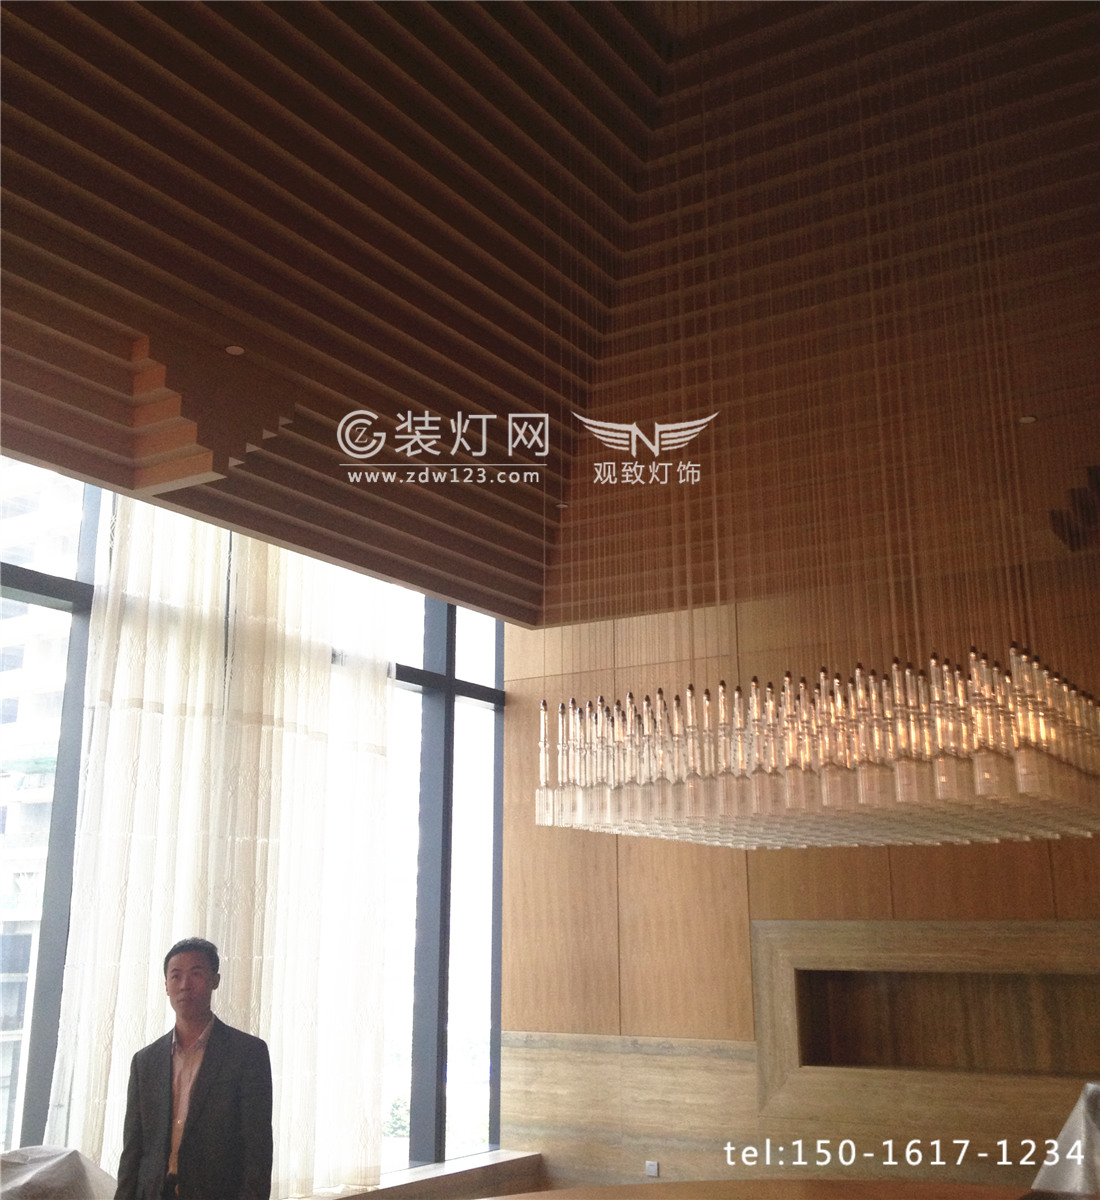 广州W酒店灯具安装现场照片